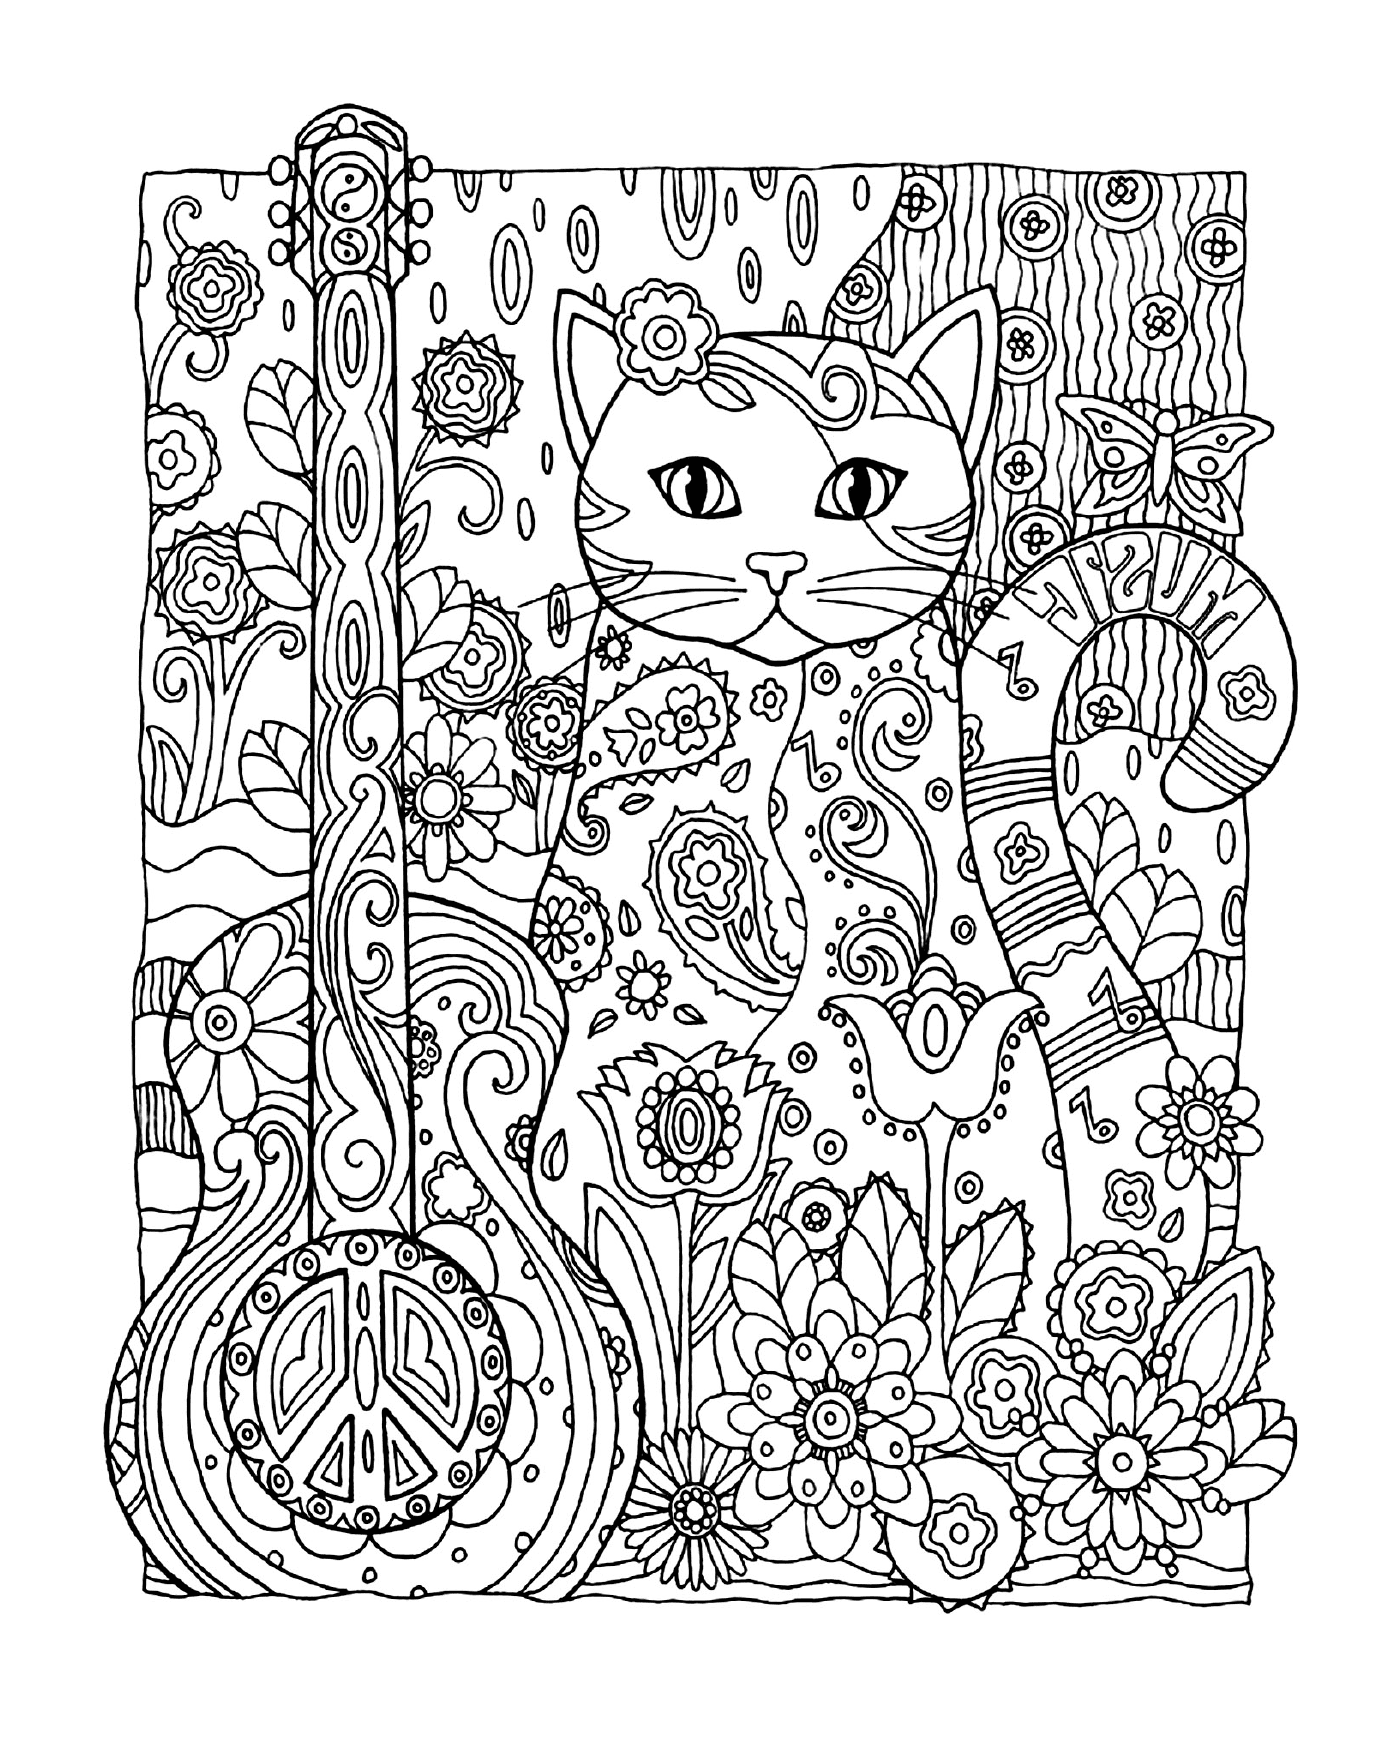  Um gato adulto sentado em uma floresta 